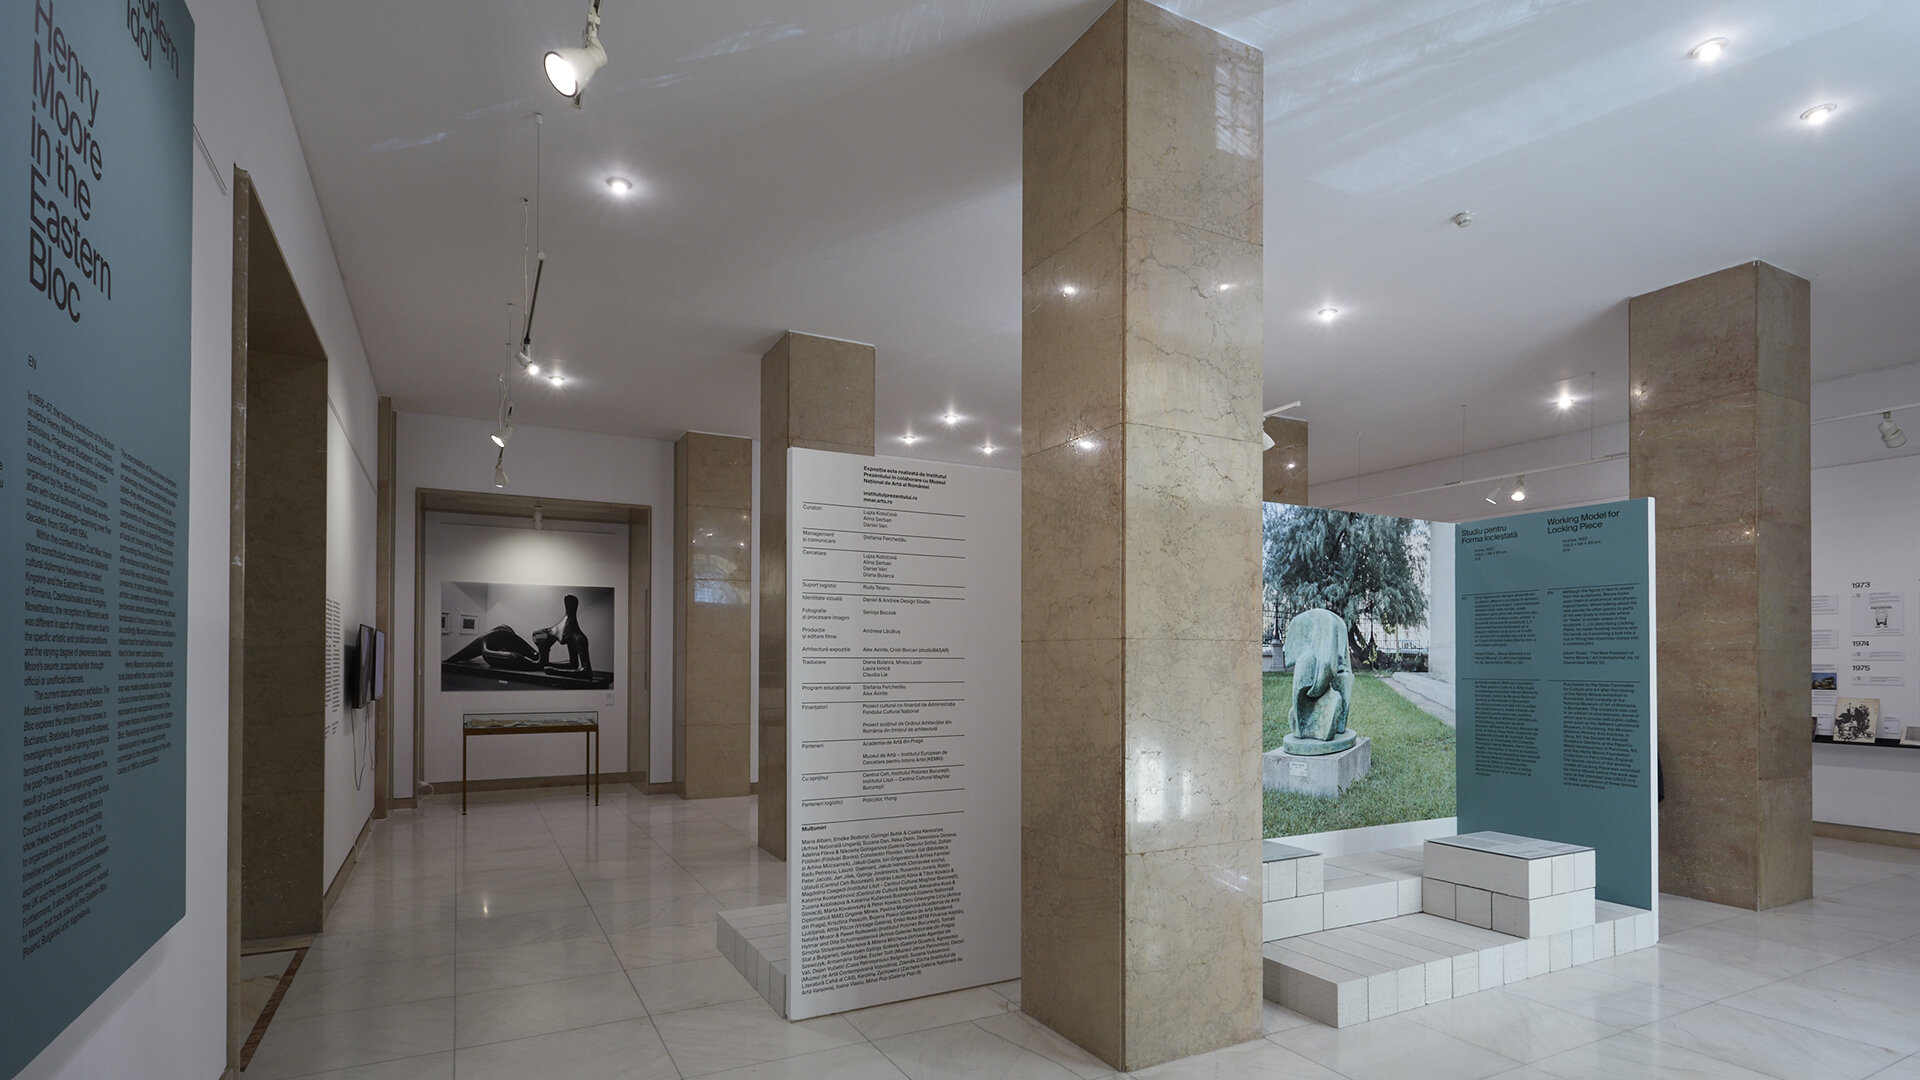 Idolul modern. Henry Moore în Blocul Răsăritean